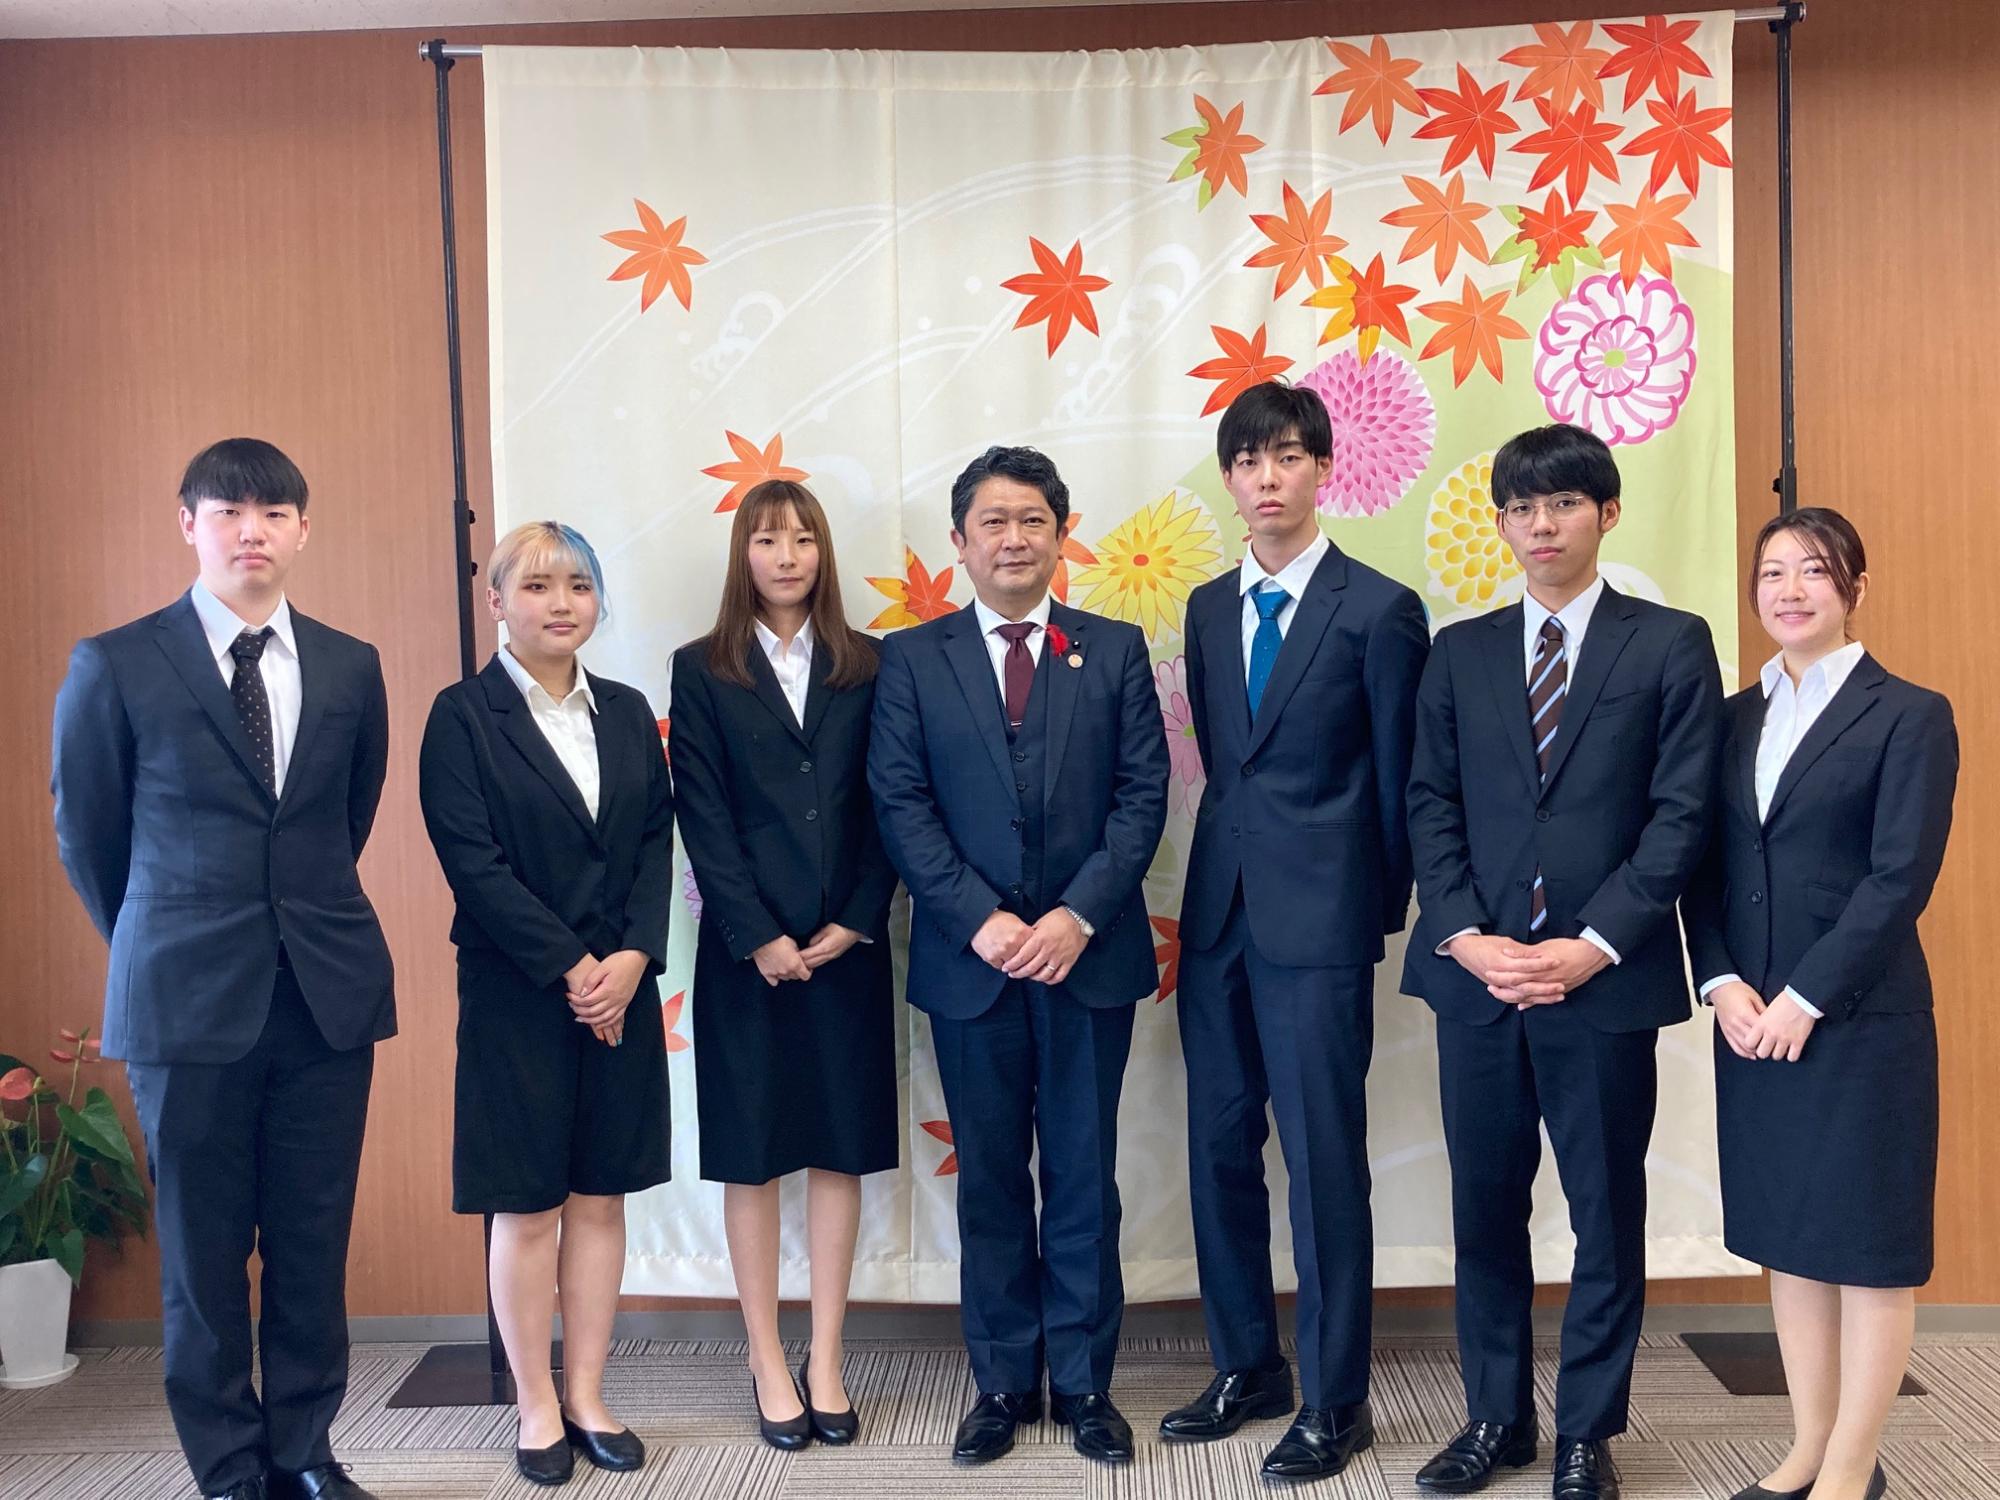 第 60 回技能五輪全国大会 出場選手激励会石川県代表6人の若き職人達と市長の集合写真